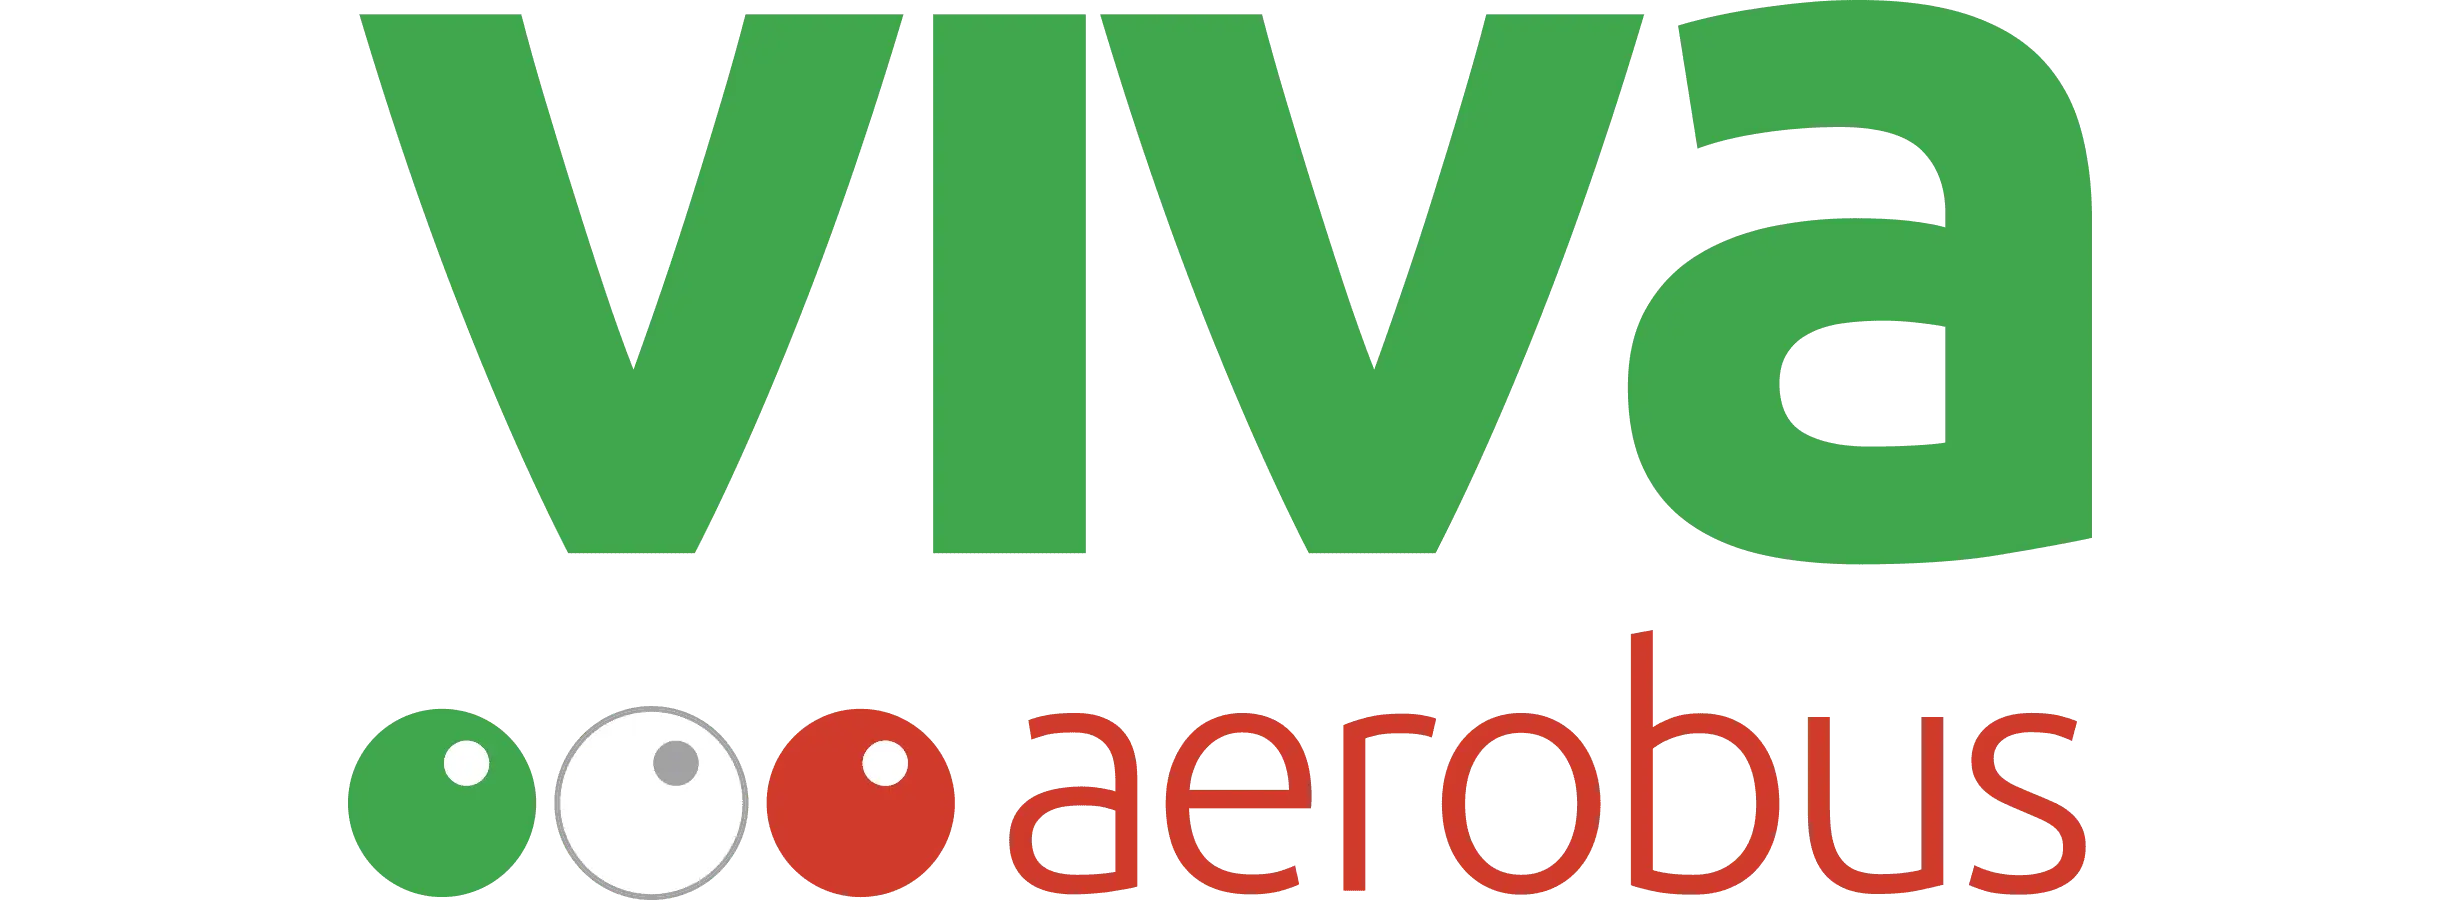 ViVa Aerobus